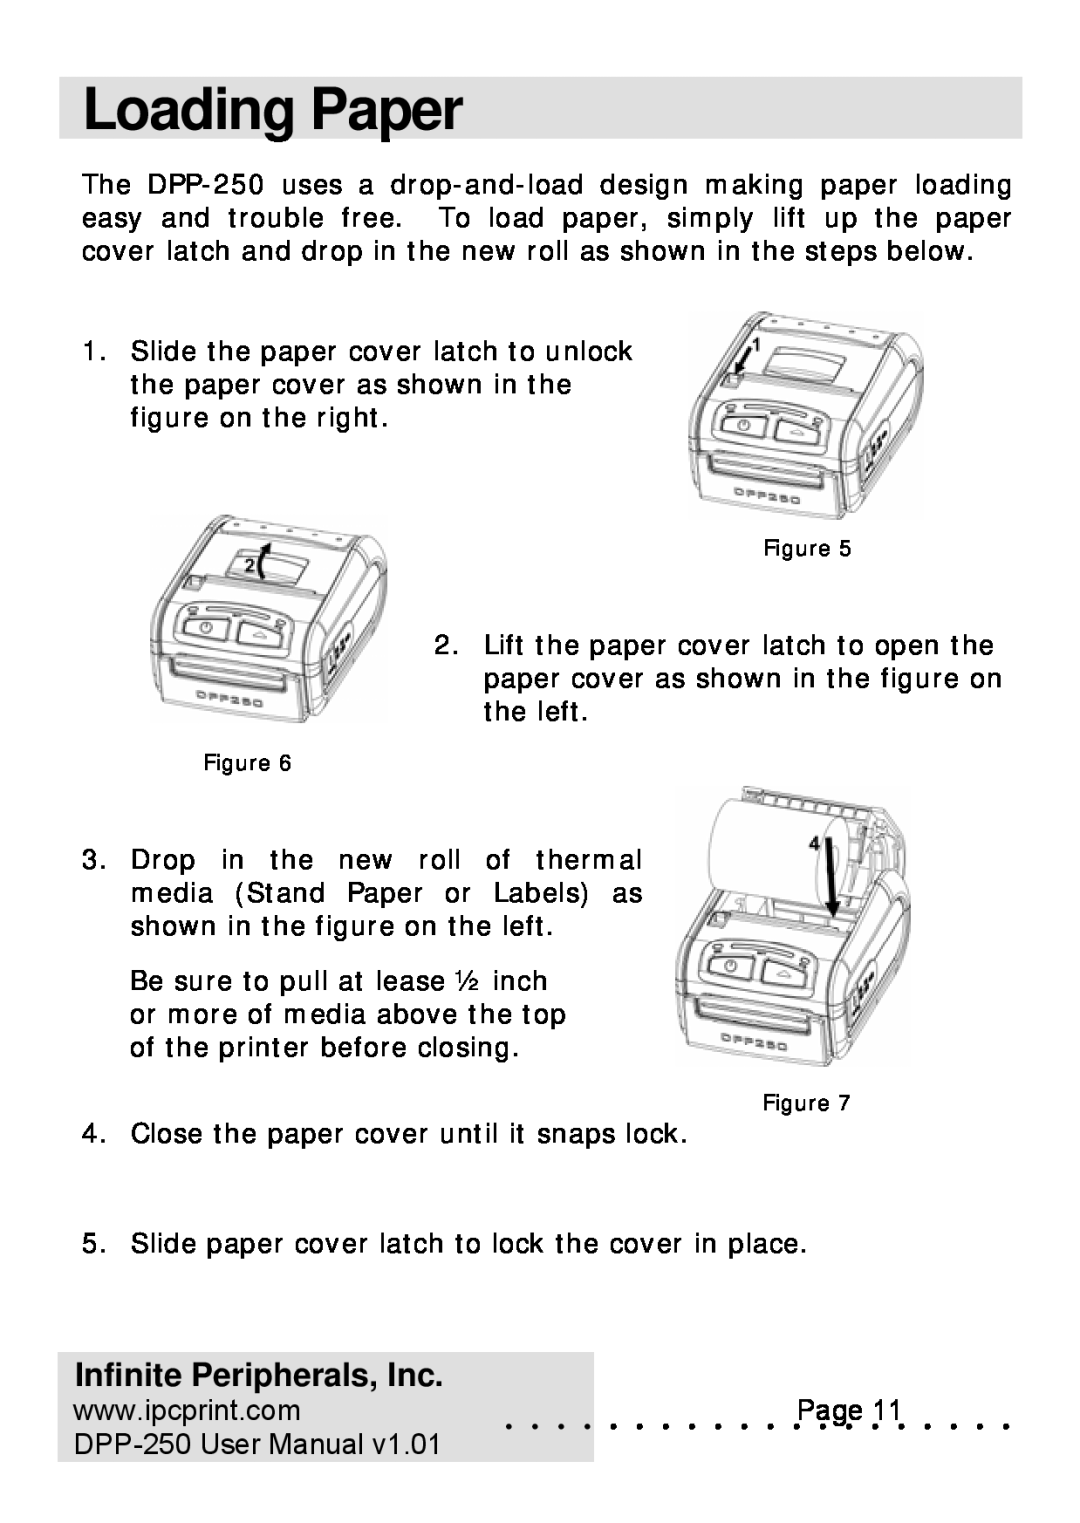 Infinite Peripherals user manual Loading Paper, Infinite Peripherals, Inc, DPP-250 User Manual 